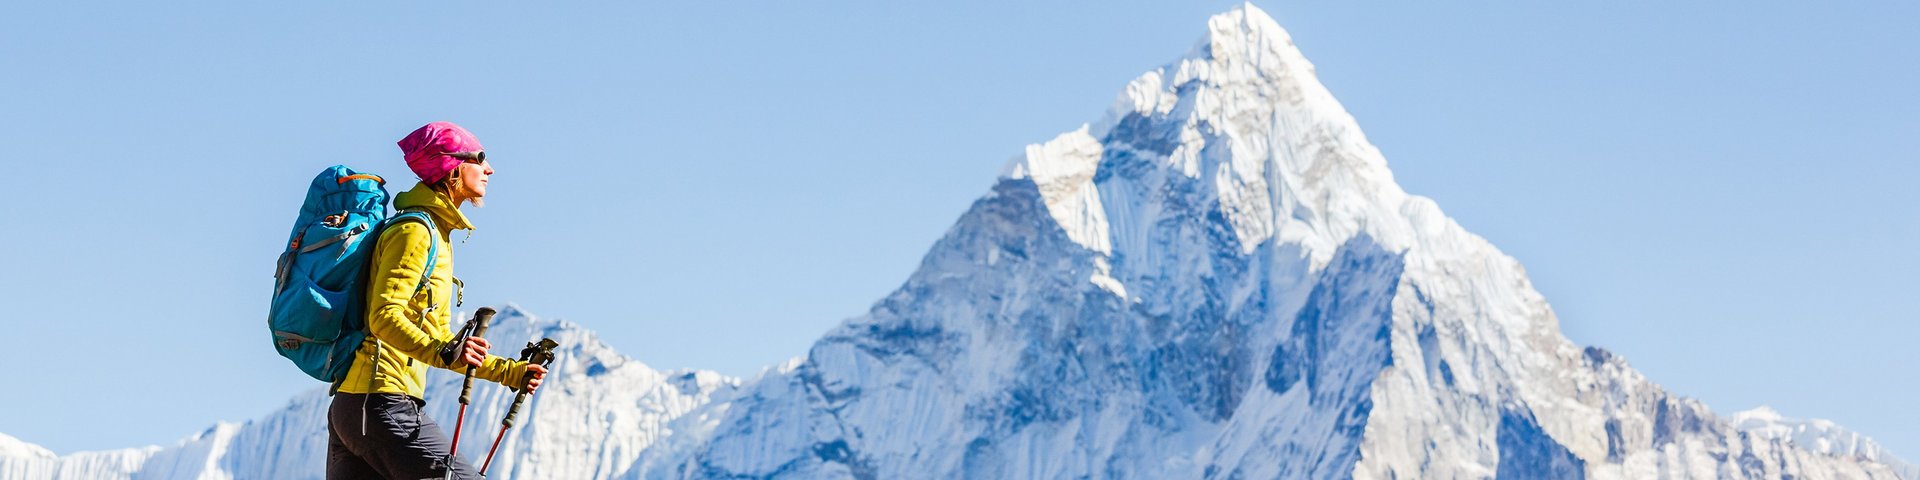 Frau wandert in Nepal, im Hintergrund ein mächtiger Berggipfel mit Schnee